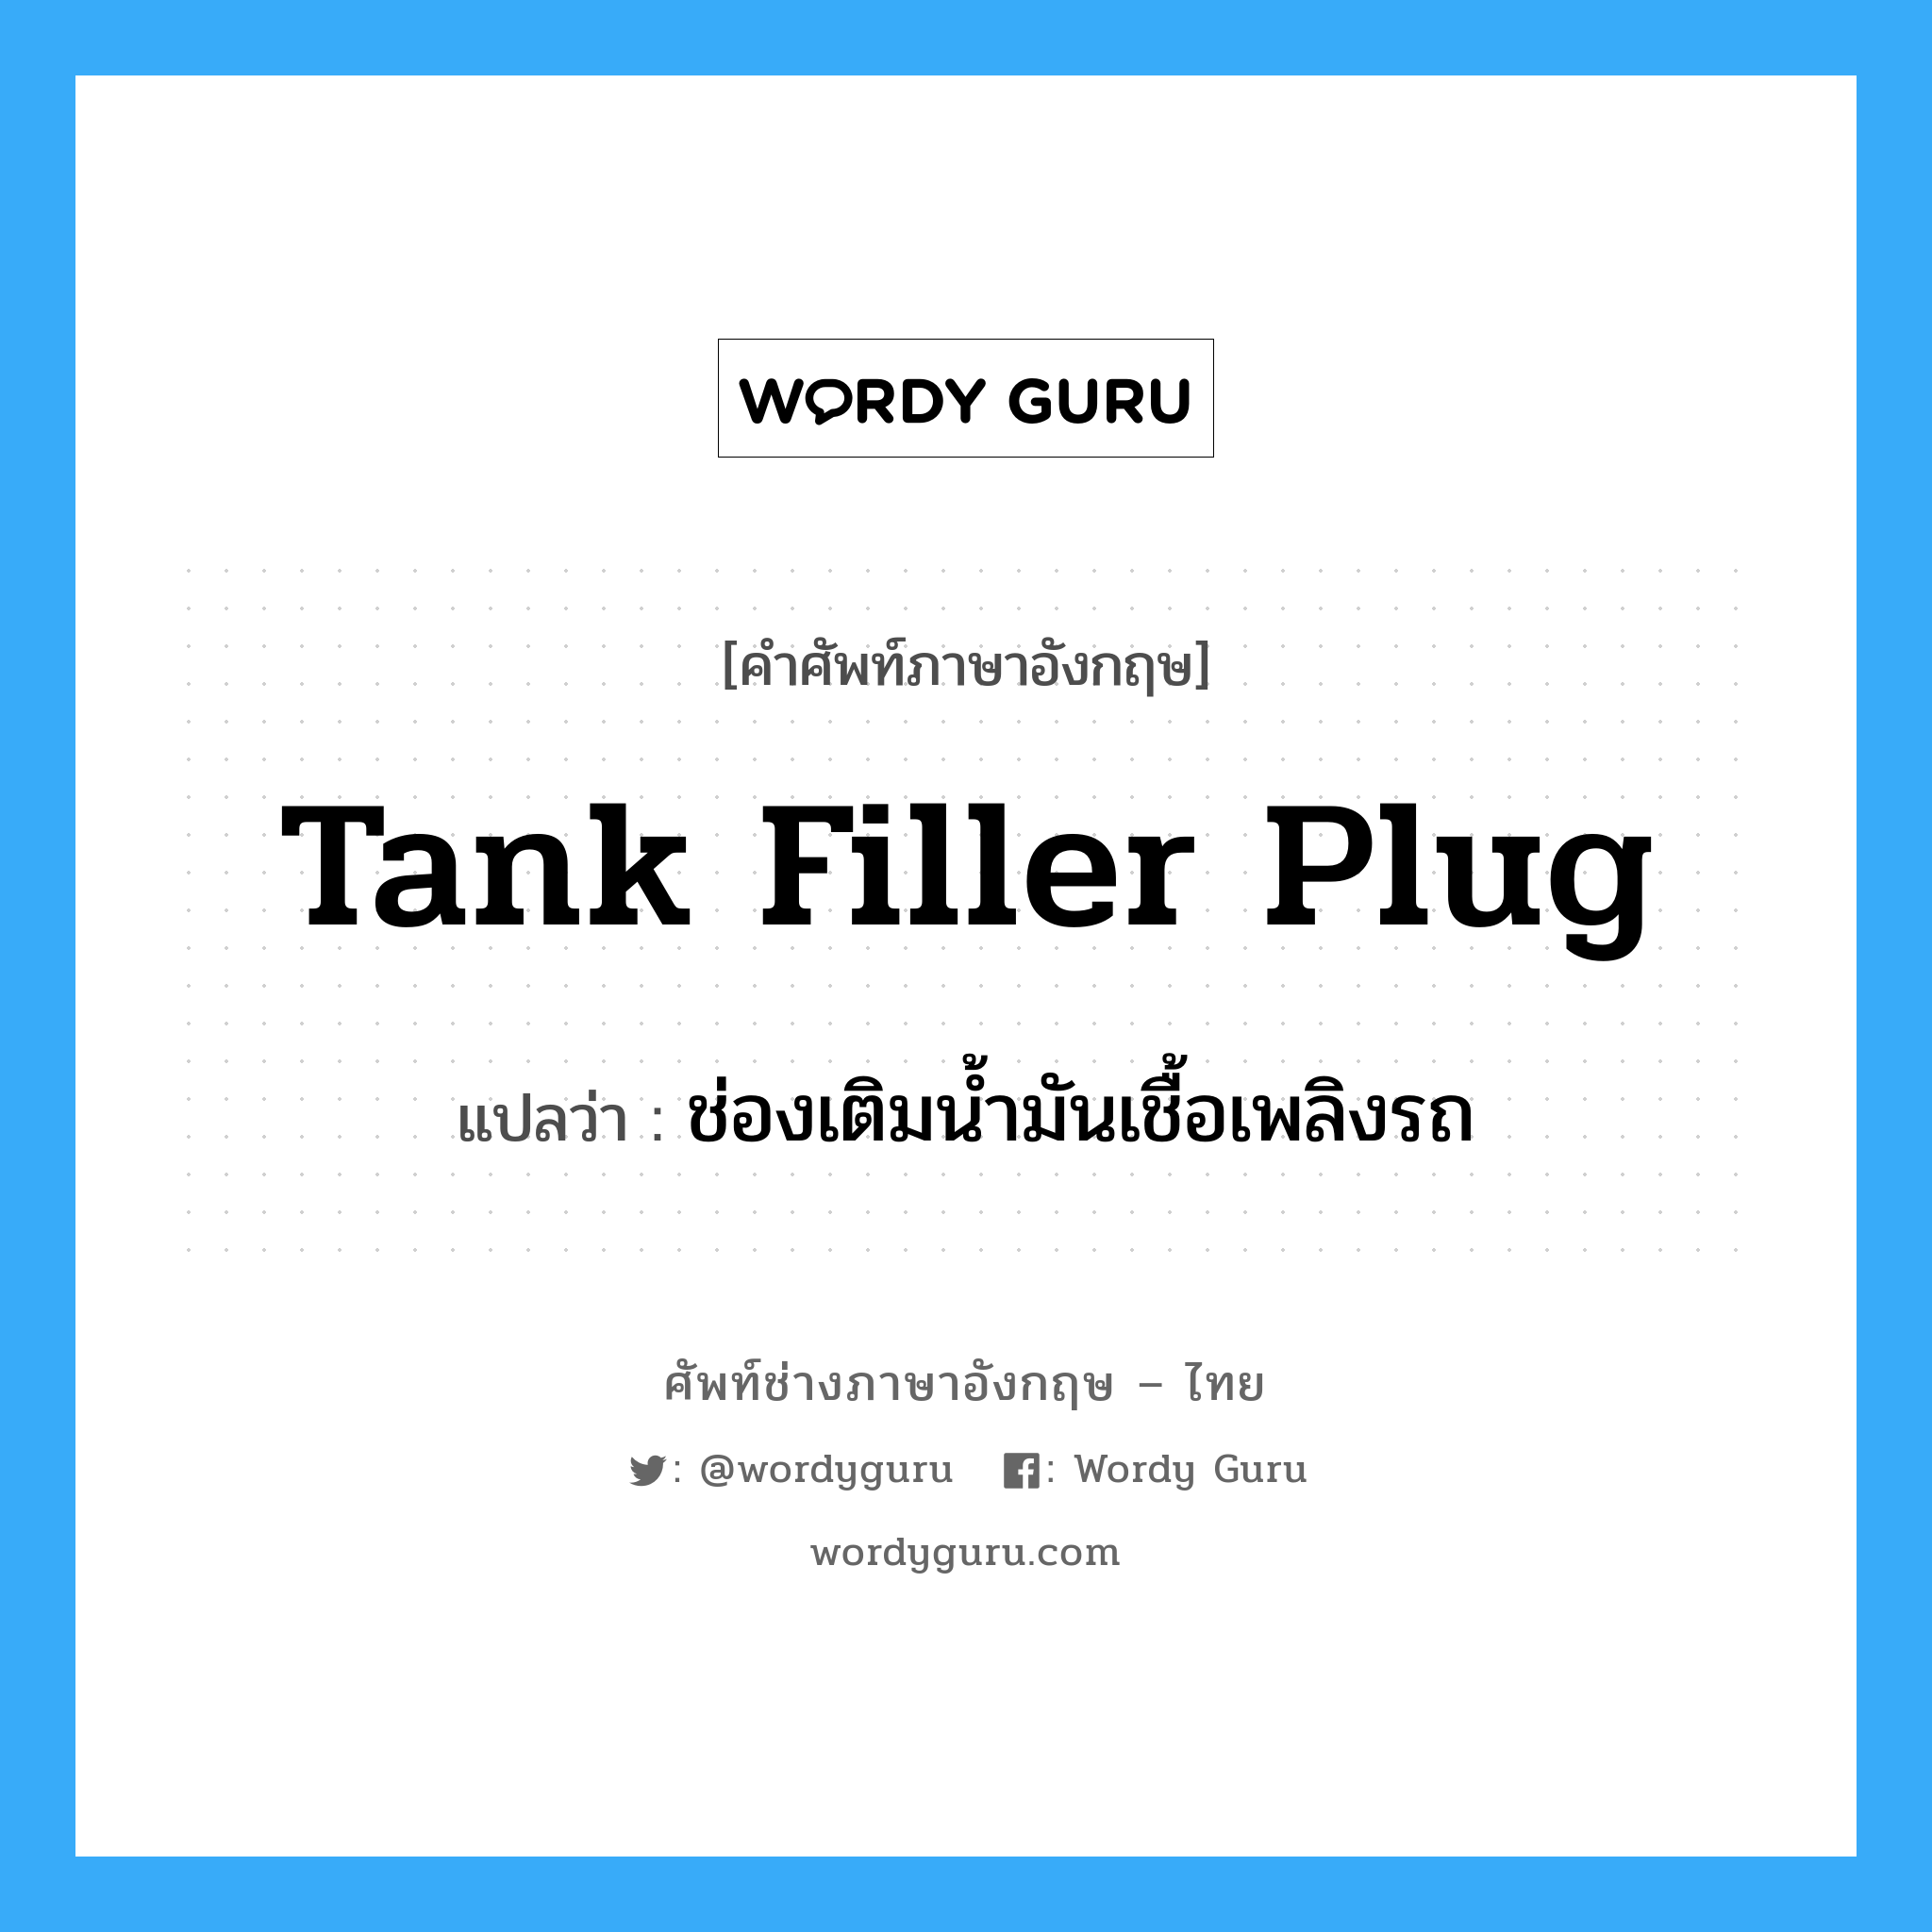 tank filler plug แปลว่า?, คำศัพท์ช่างภาษาอังกฤษ - ไทย tank filler plug คำศัพท์ภาษาอังกฤษ tank filler plug แปลว่า ช่องเติมน้ำมันเชื้อเพลิงรถ